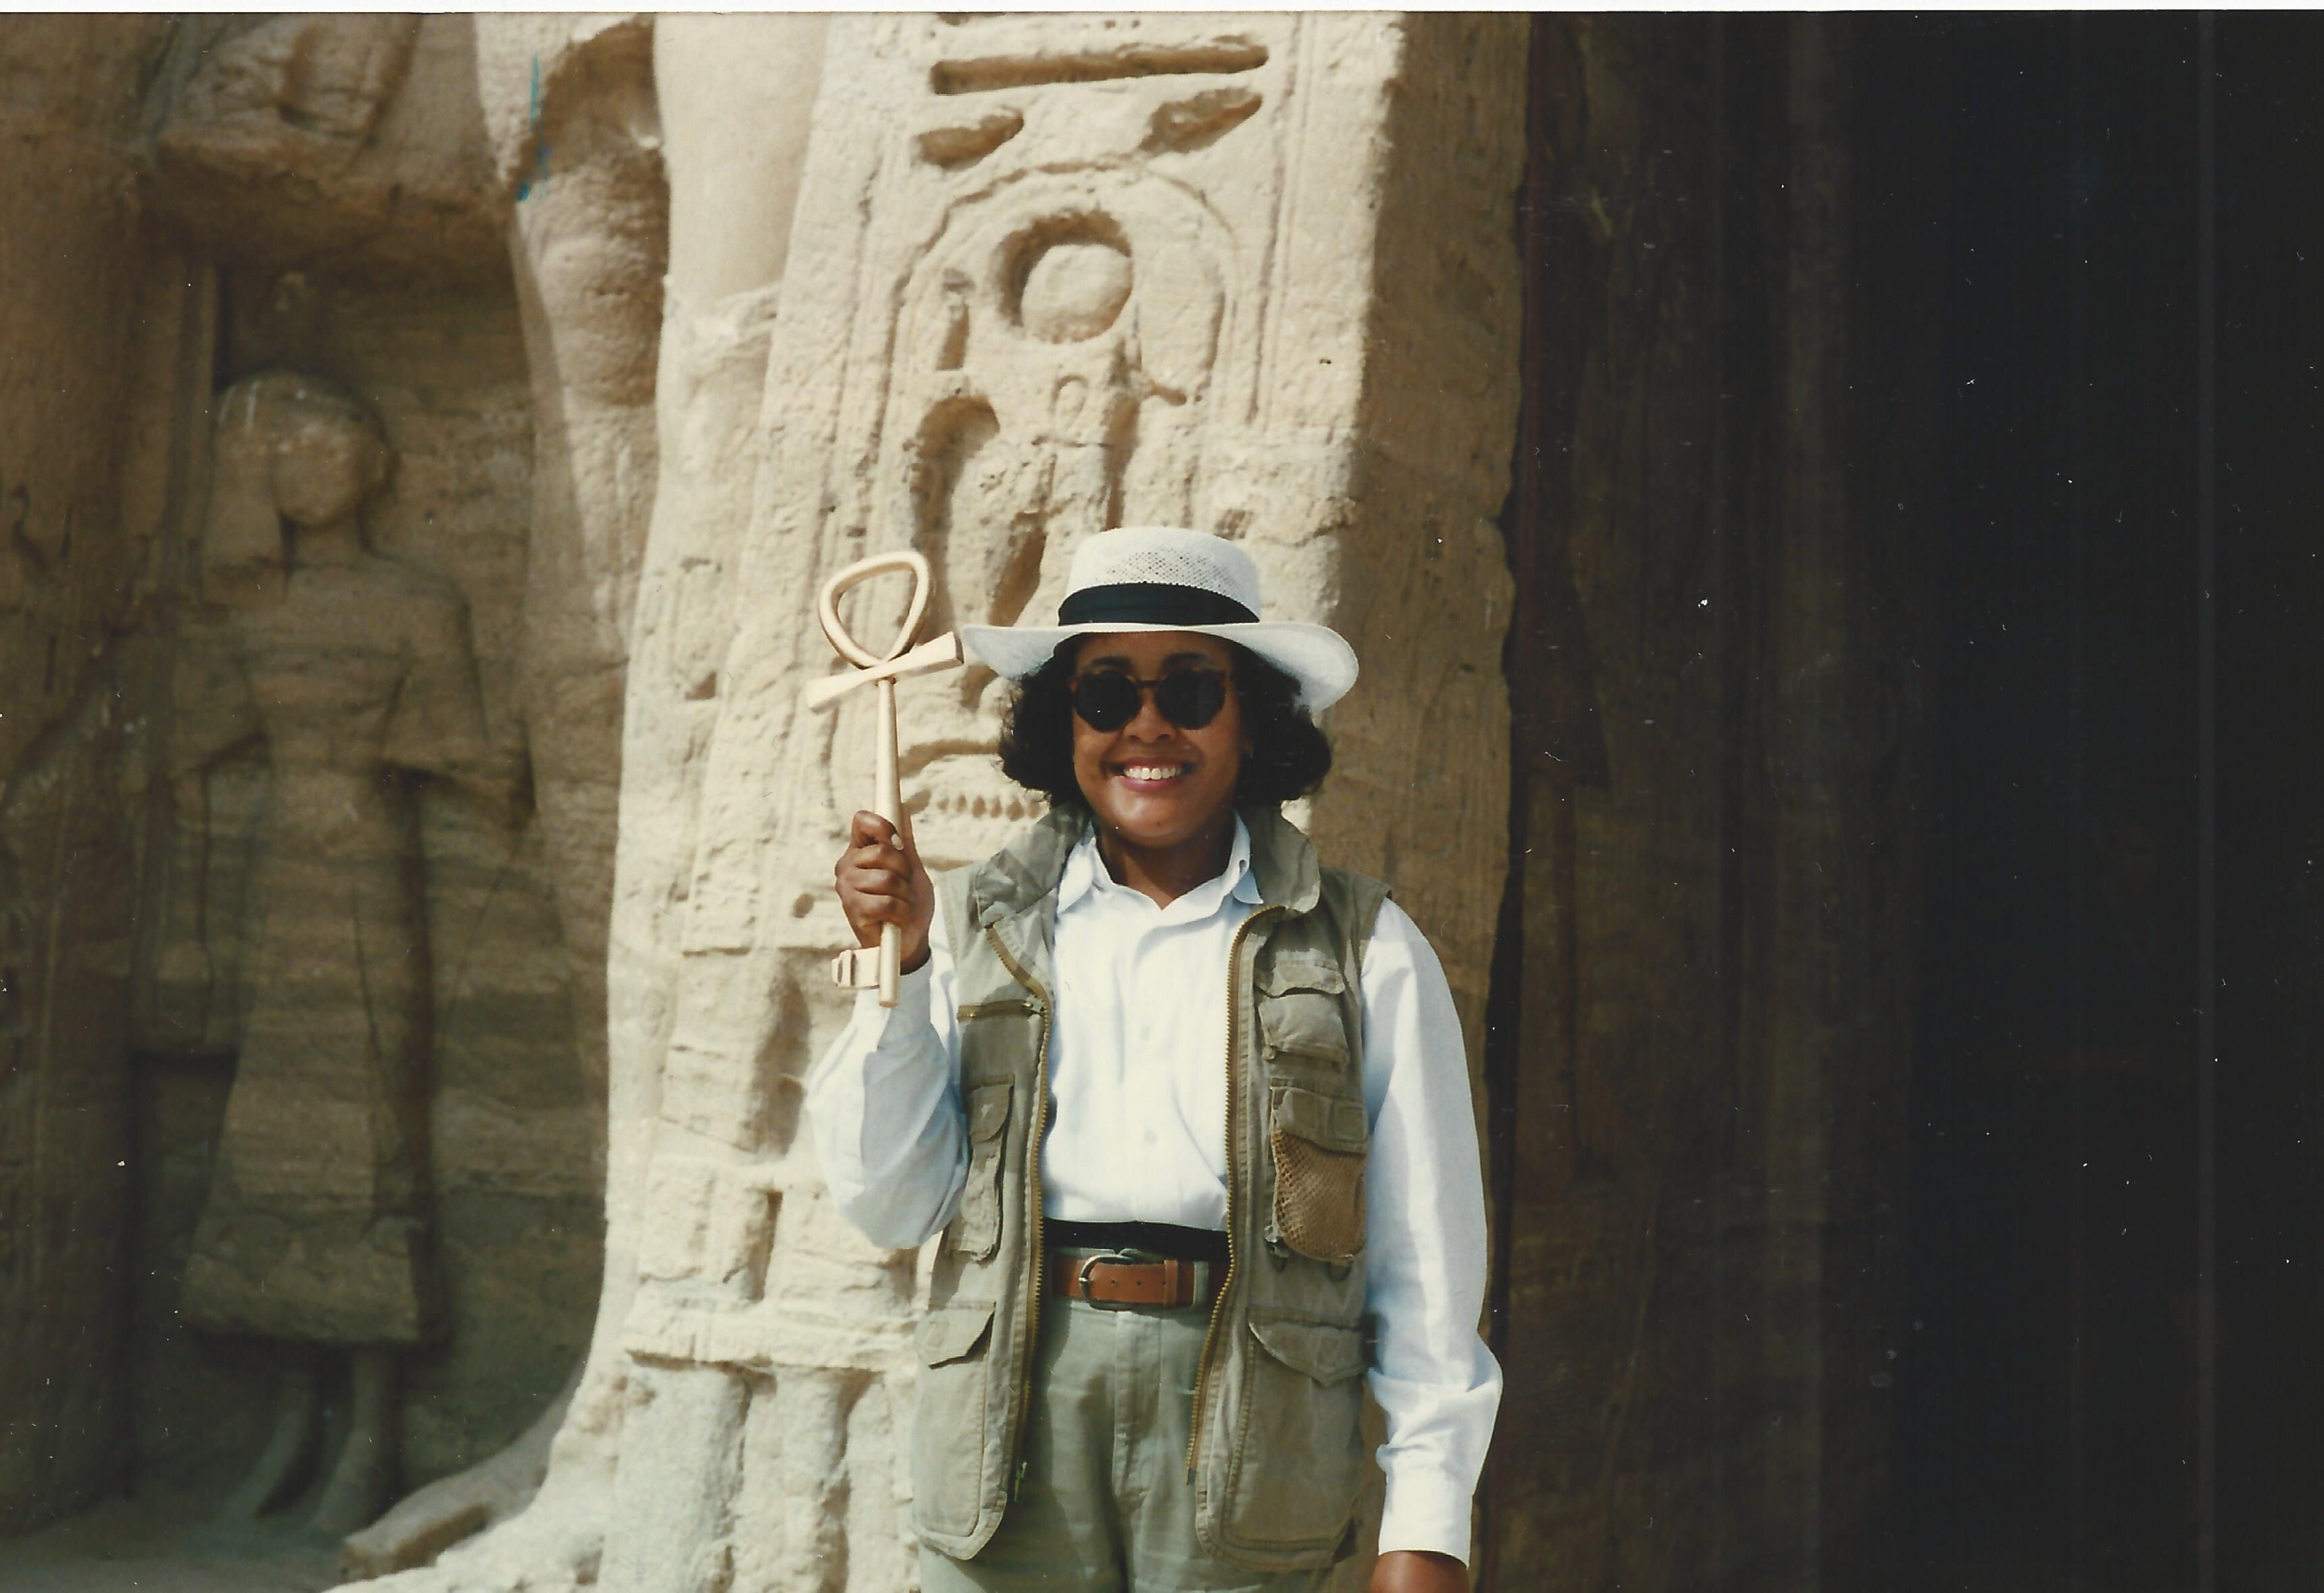 גייל קמפבל וולי במצרים , 1996. מקדש אבו סימבל. גייל אוחזת בסמל אנק או "מפתח החיים".